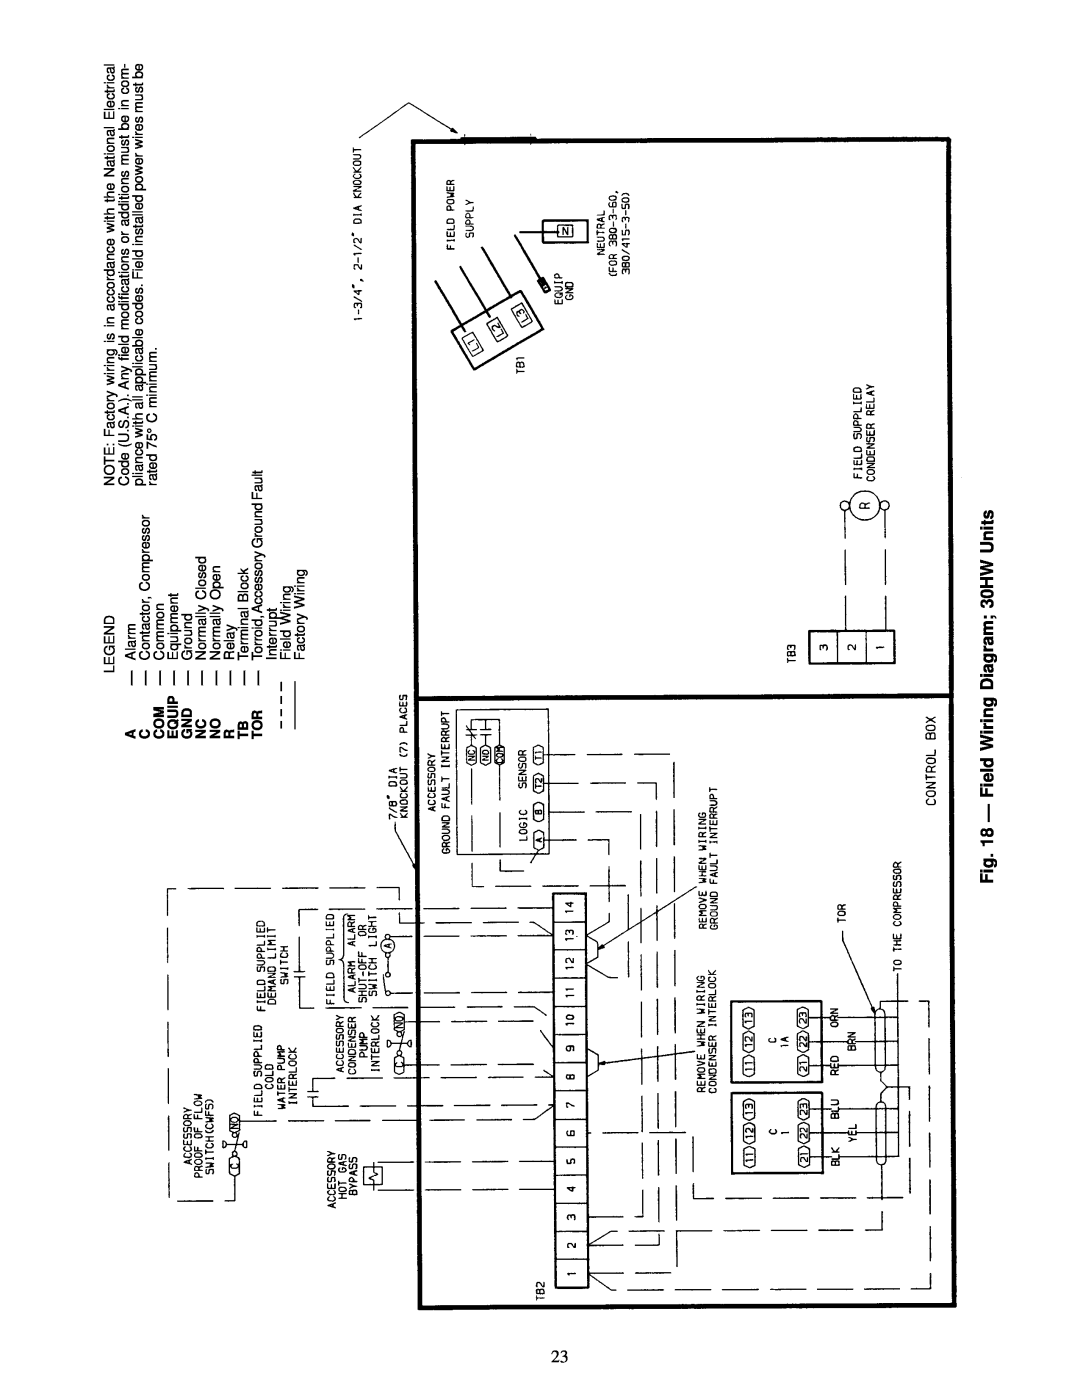 Carrier 30HK040-060, 30HW018-040 Ð Field Wiring Diagram 30HW Units, R Ð Relay, Interrupt Field Wiring Factory Wiring 